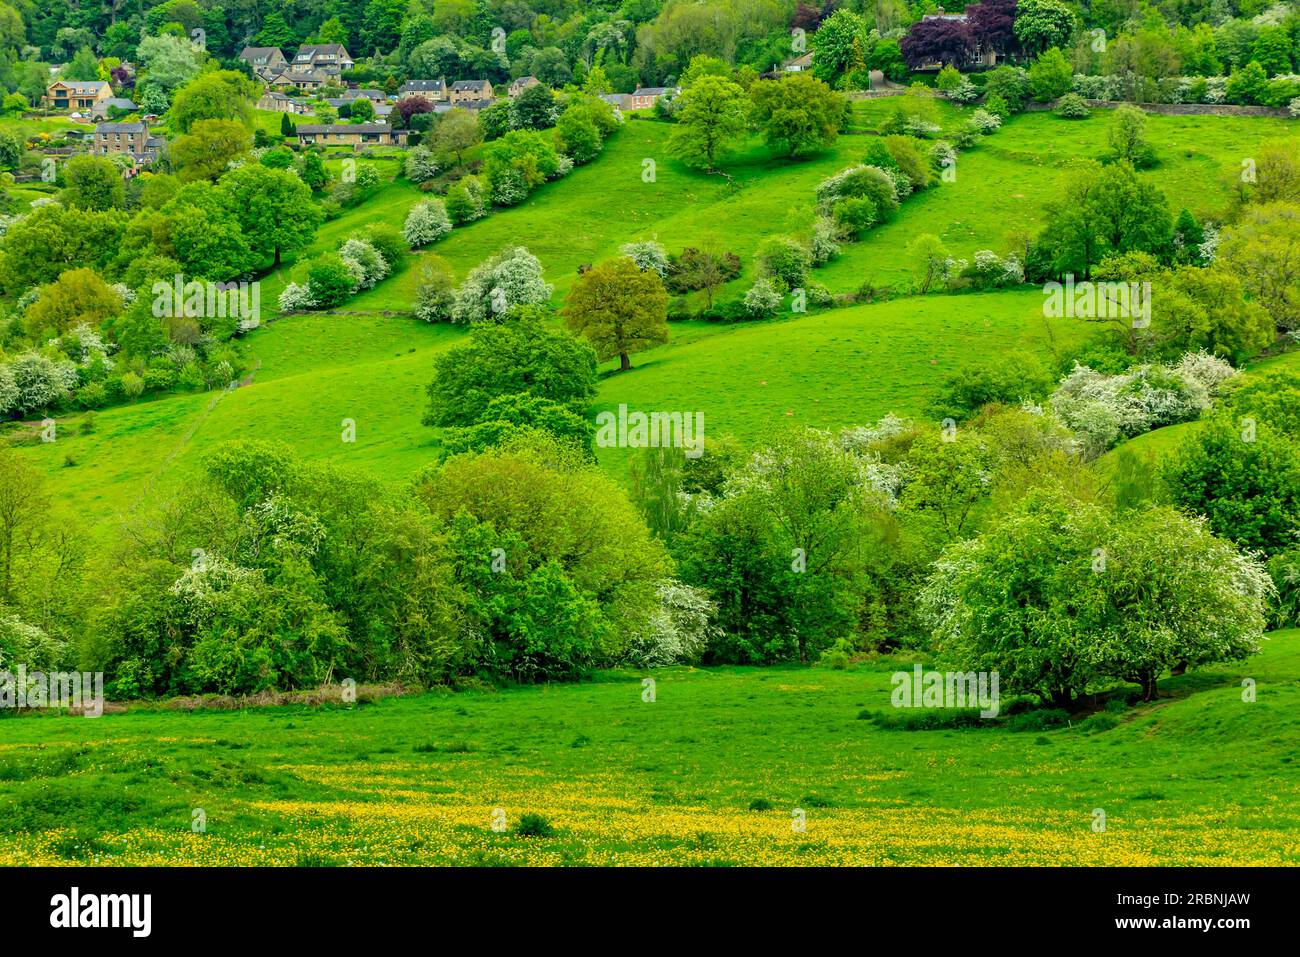 Vue sur les champs en direction du village de Starkholmes depuis Matlock Bath, dans le Derbyshire Dales Peak District Angleterre Royaume-Uni avec des arbres de couleur printanière. Banque D'Images